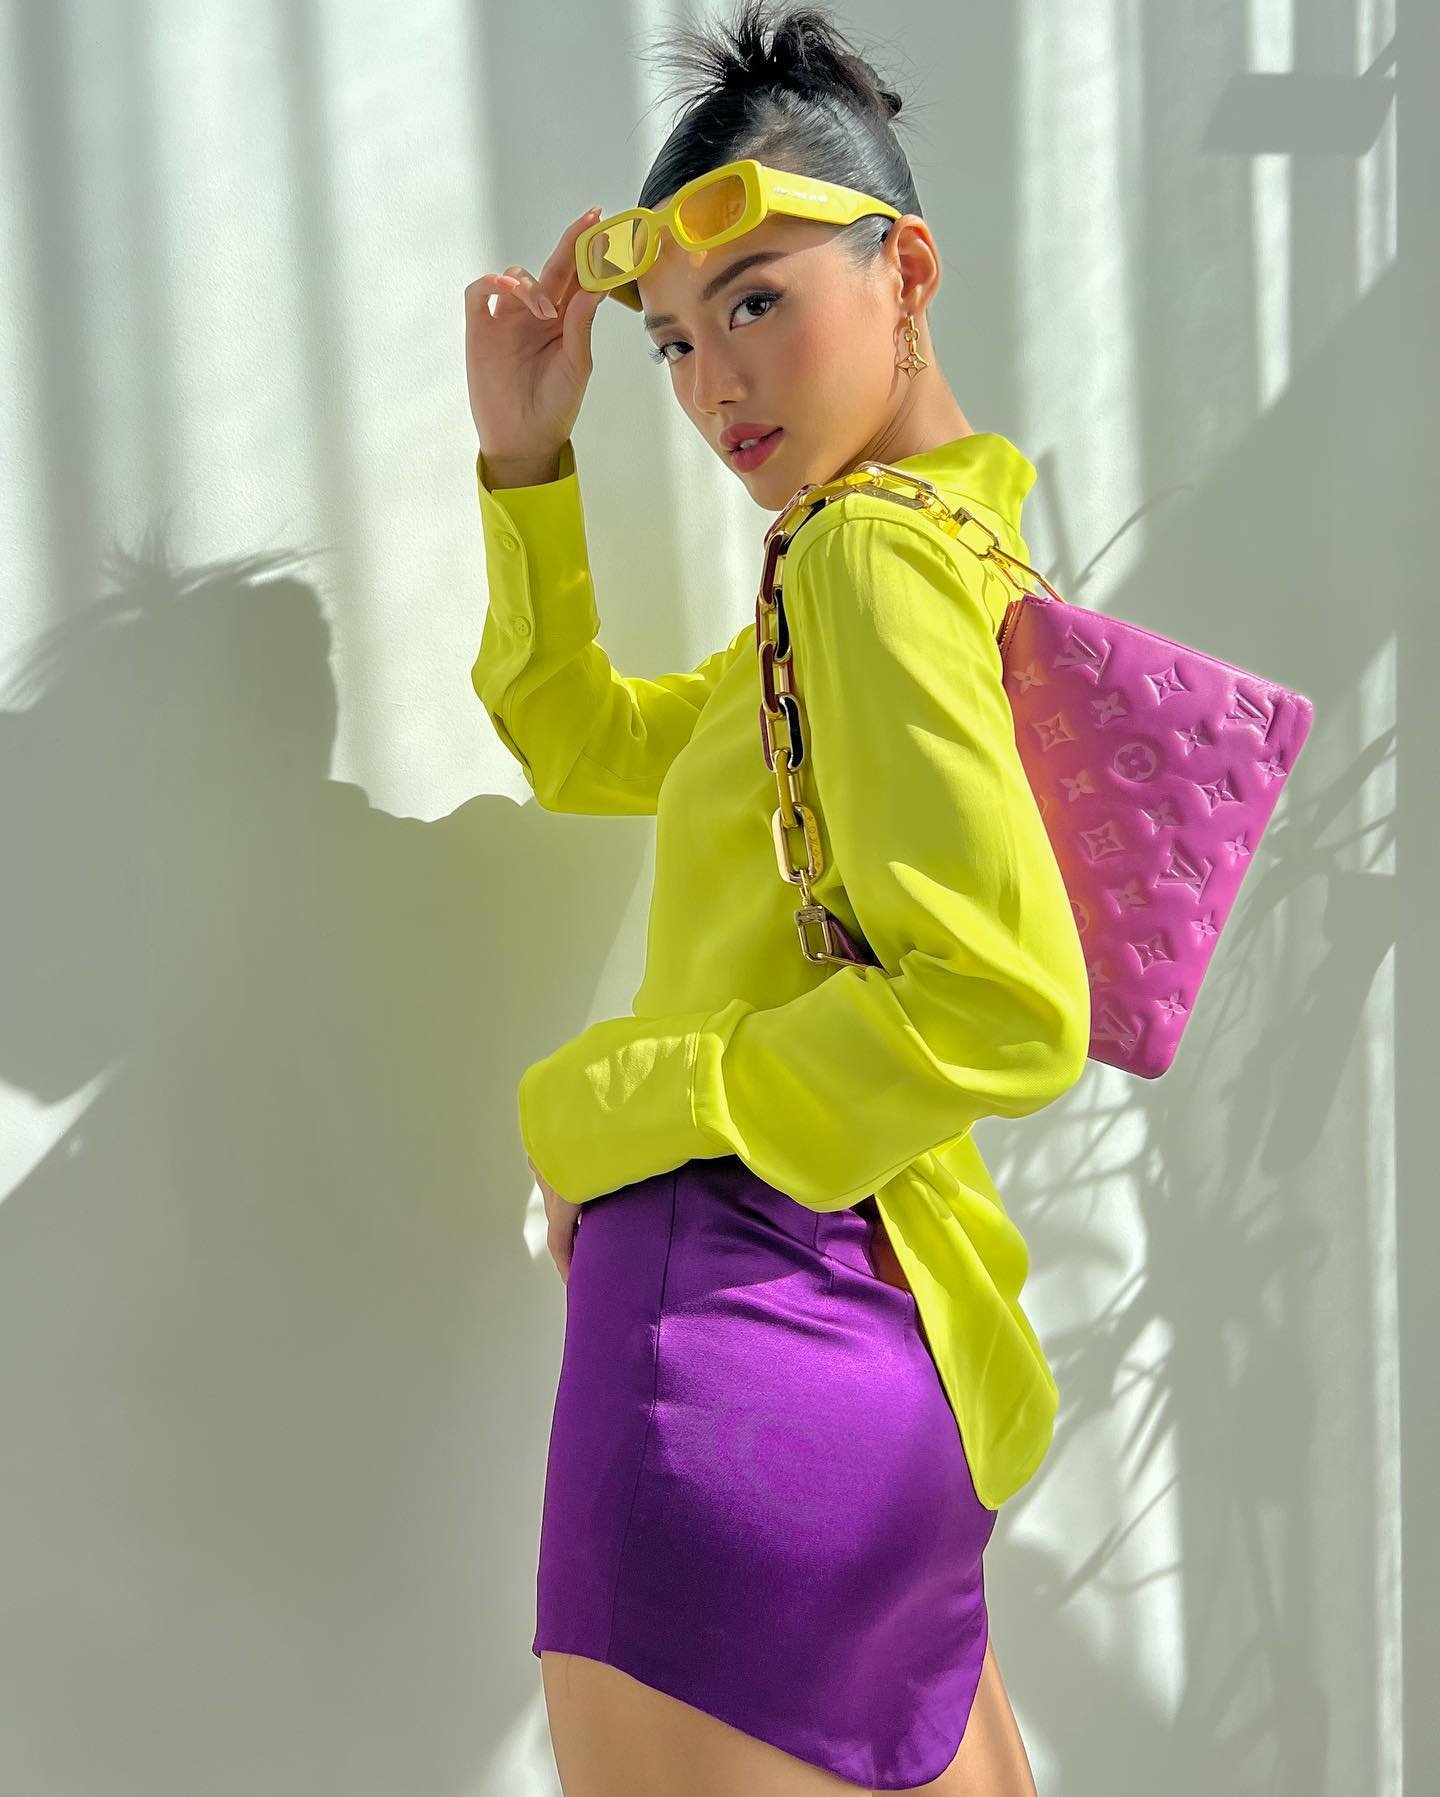 Hầu hết những bức ảnh được đăng tải trên Instagram của Khánh Linh đều là những trang phục, phụ kiện xa xỉ, hợp trend.